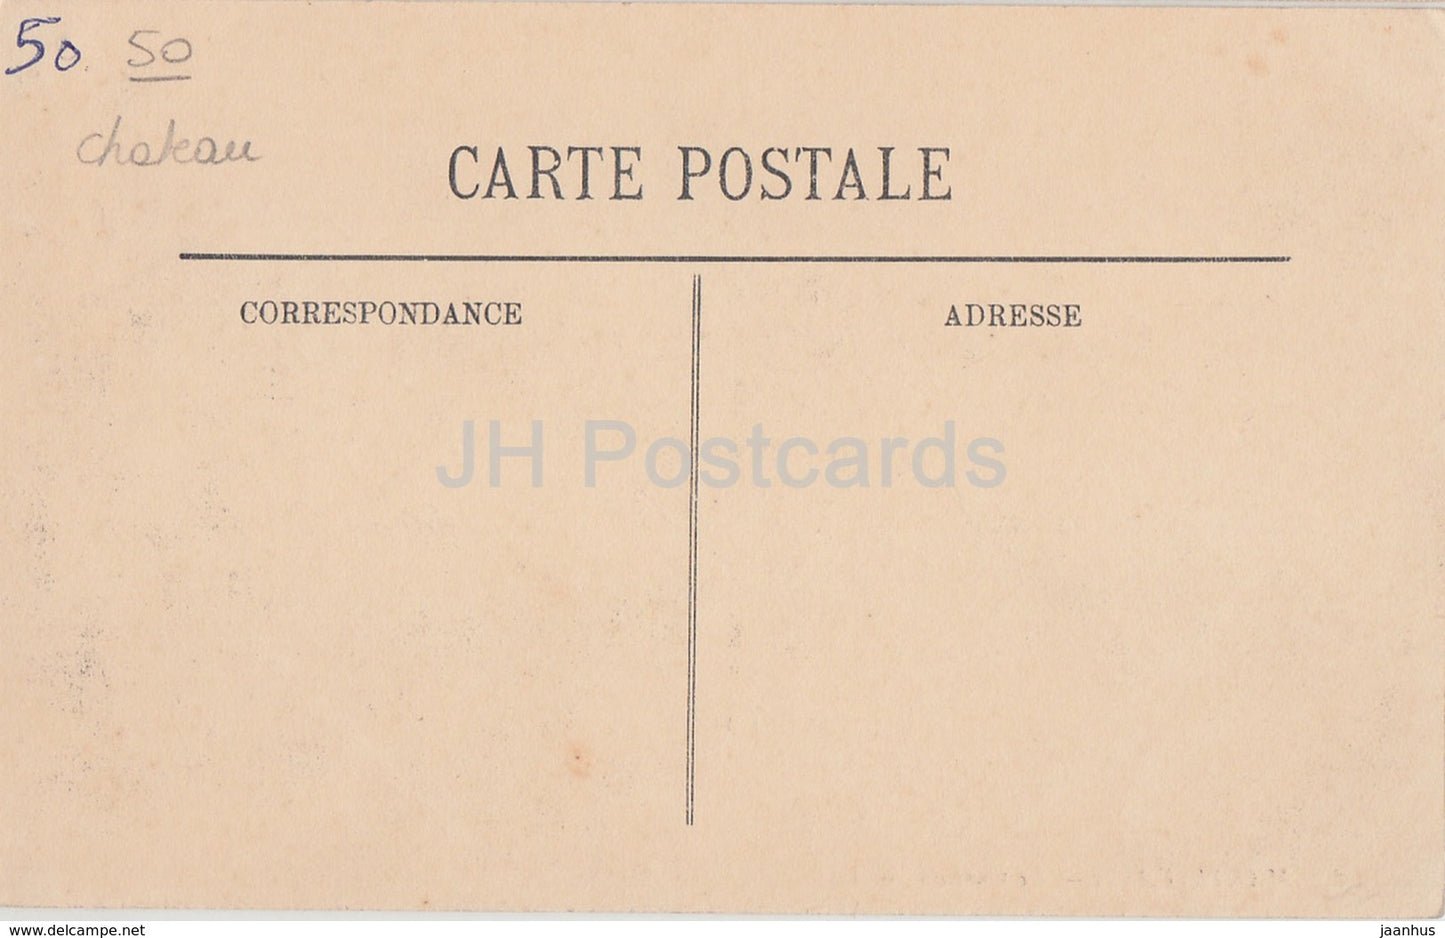 Martinvast - Le Chateau - castle - 2 - old postcard - France - unused